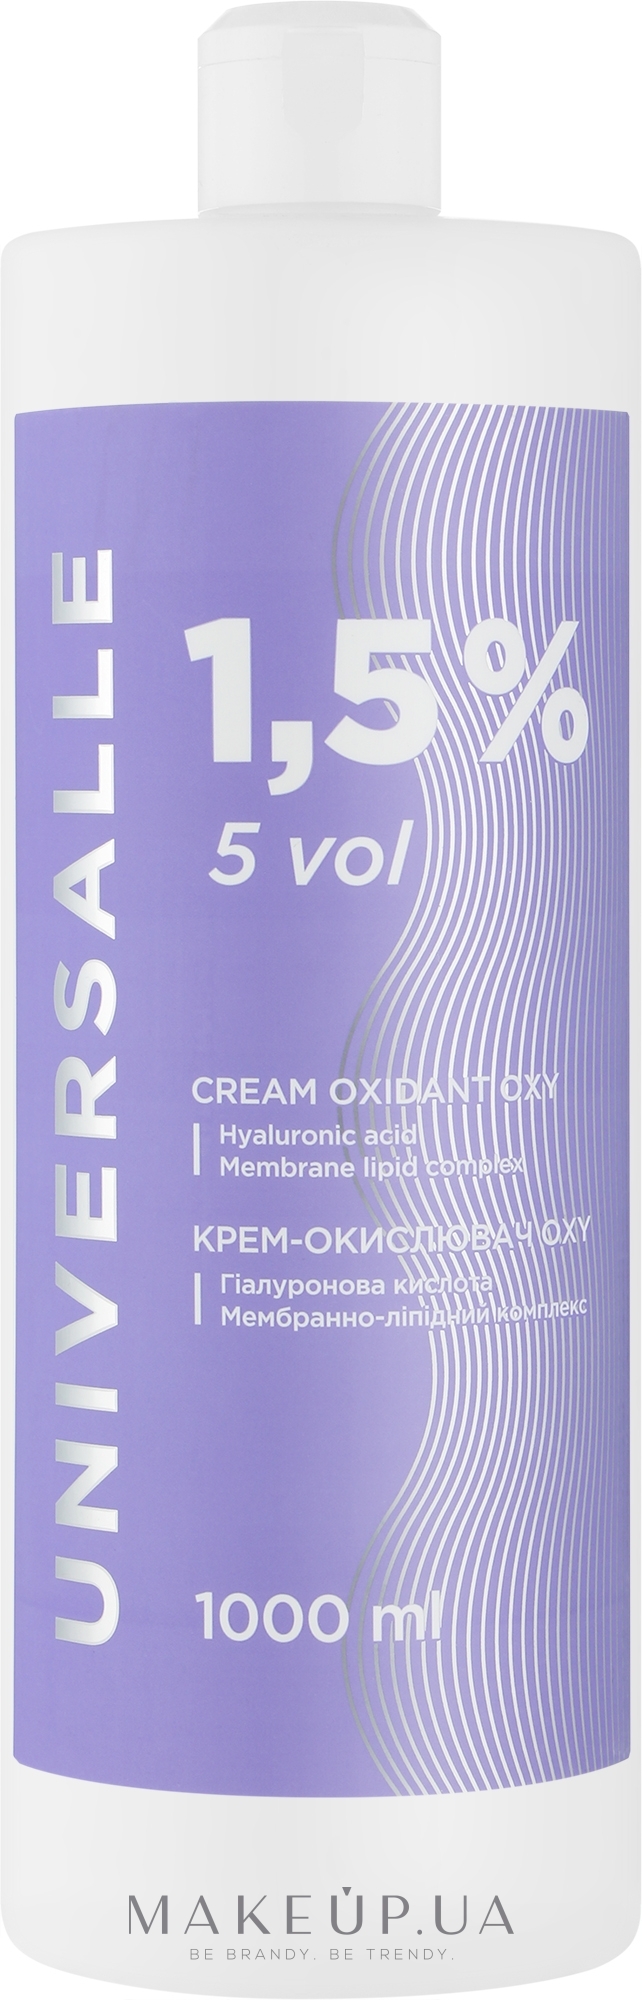 Крем-окислювач 1,5% - Universalle Cream Oxidant Oxy — фото 1000ml